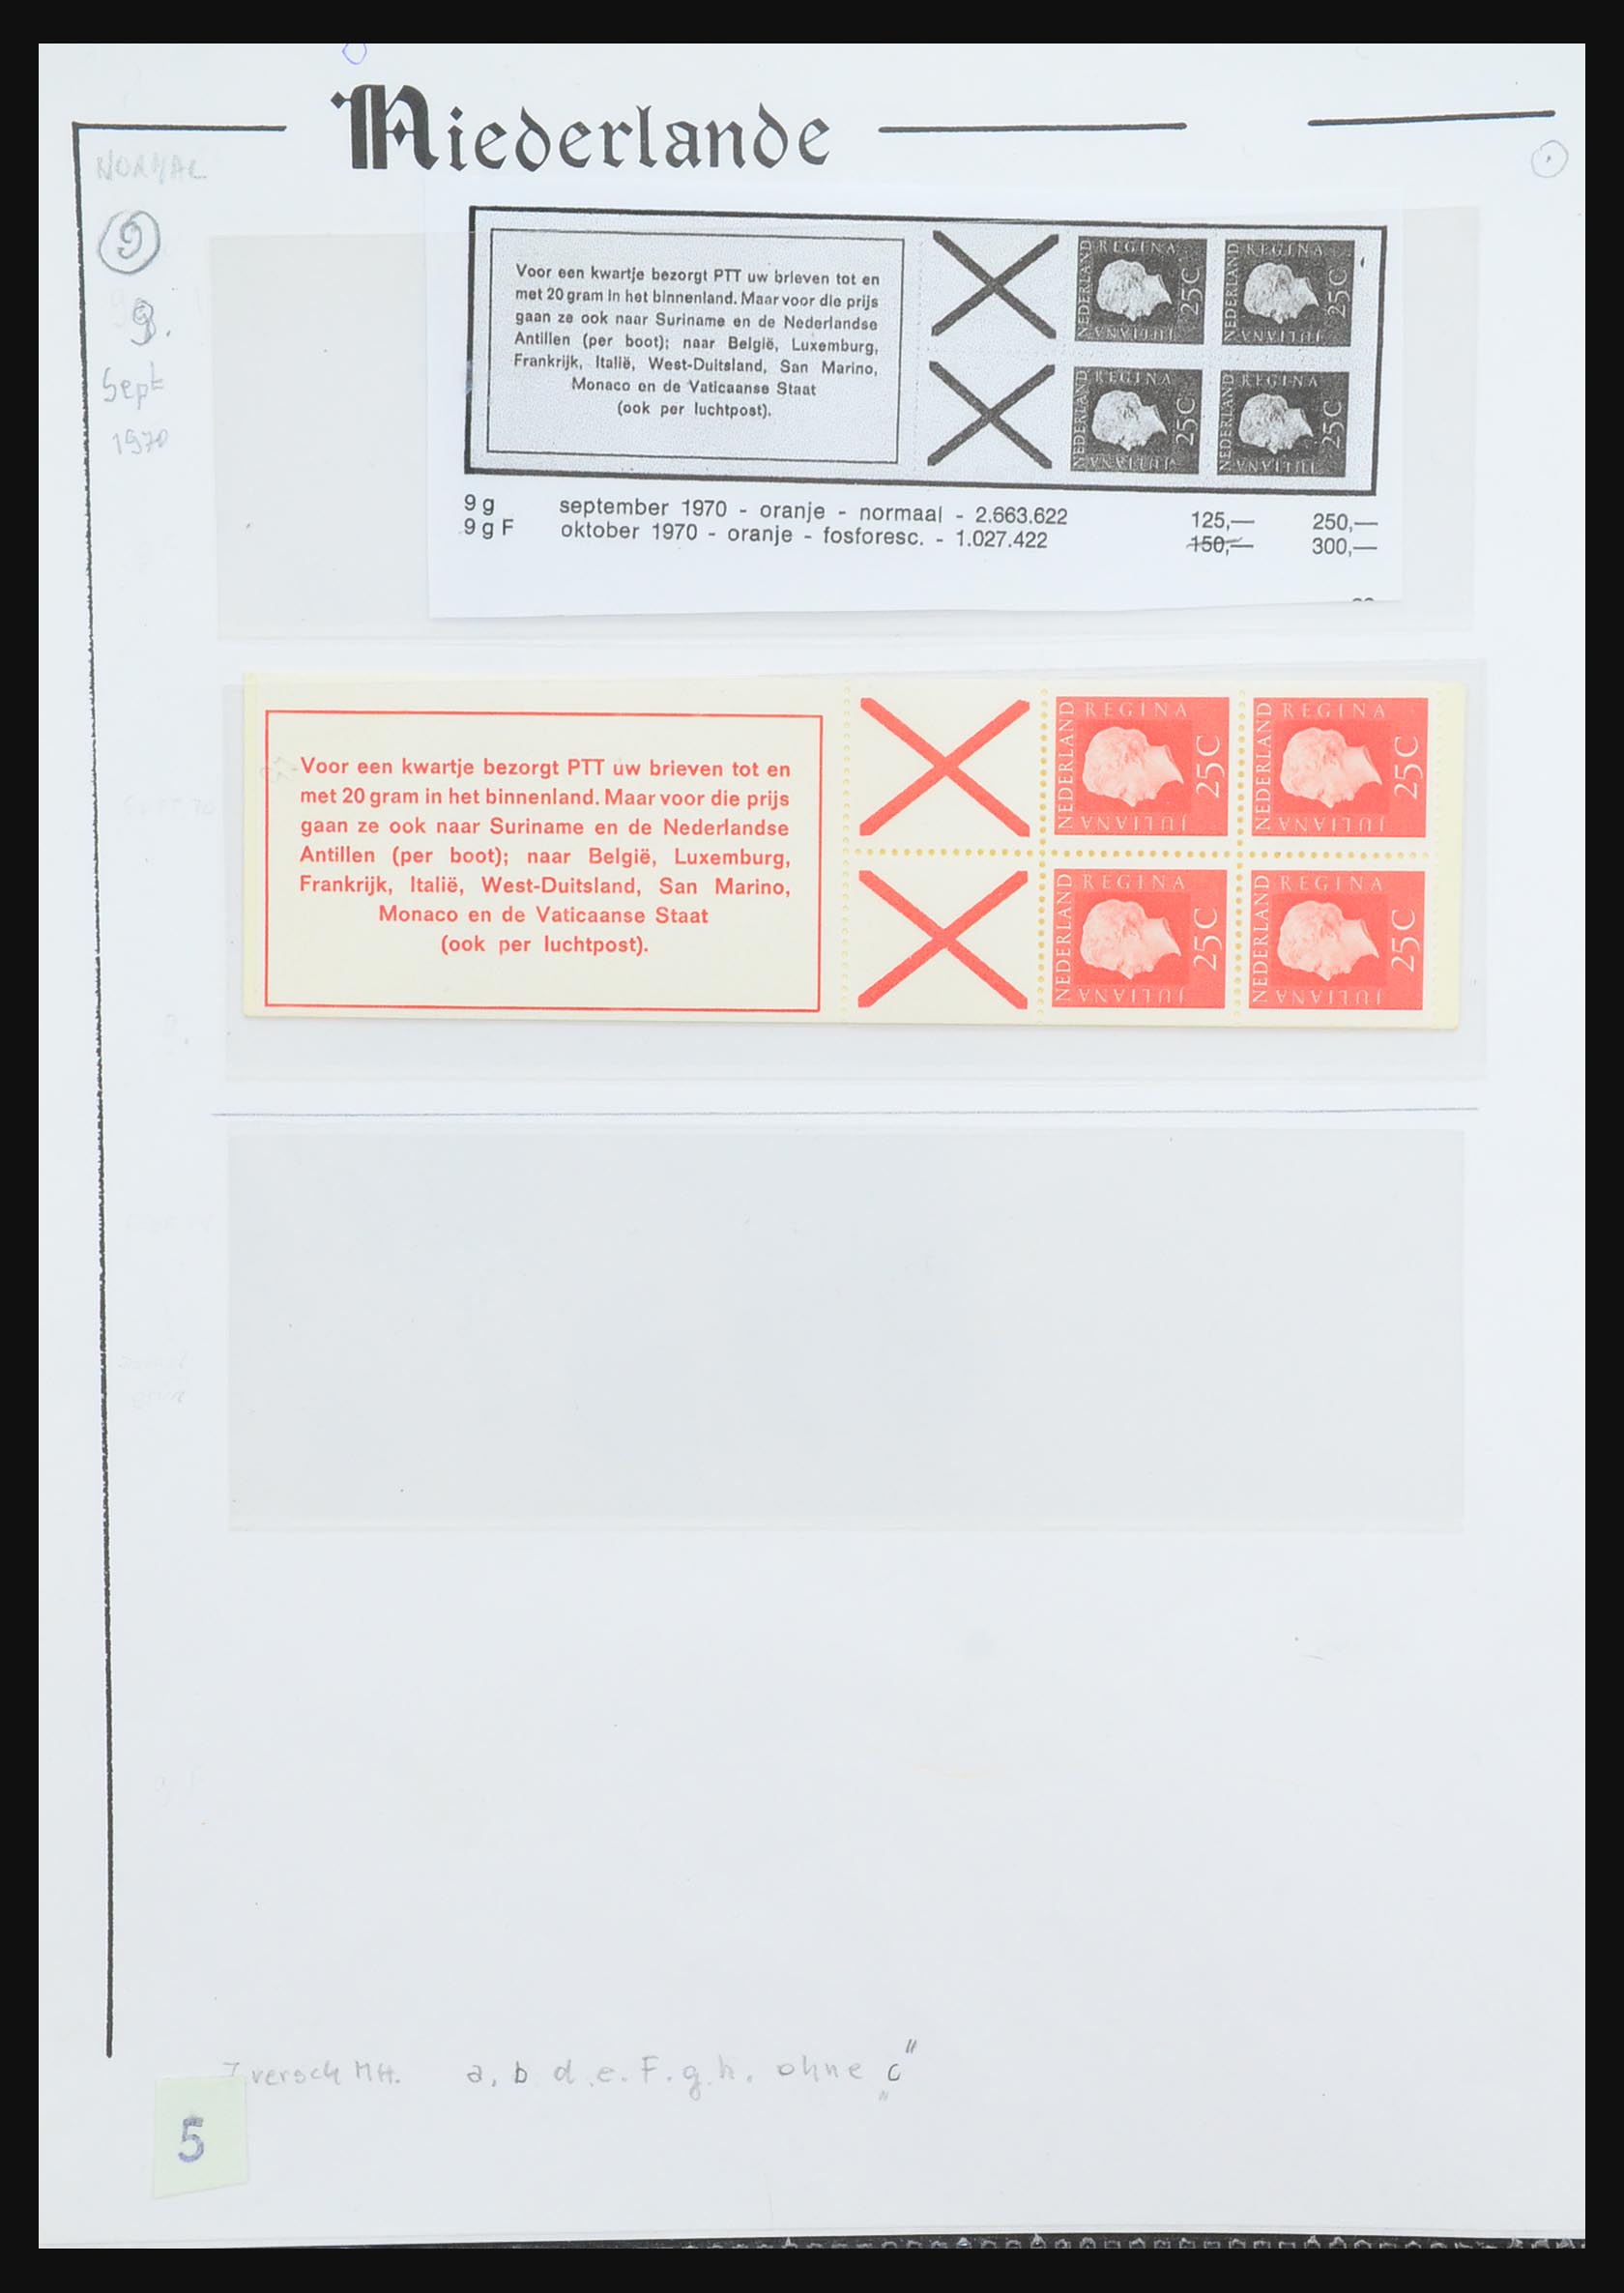 31311 037 - 31311 Netherlands stamp booklets 1964-1994.